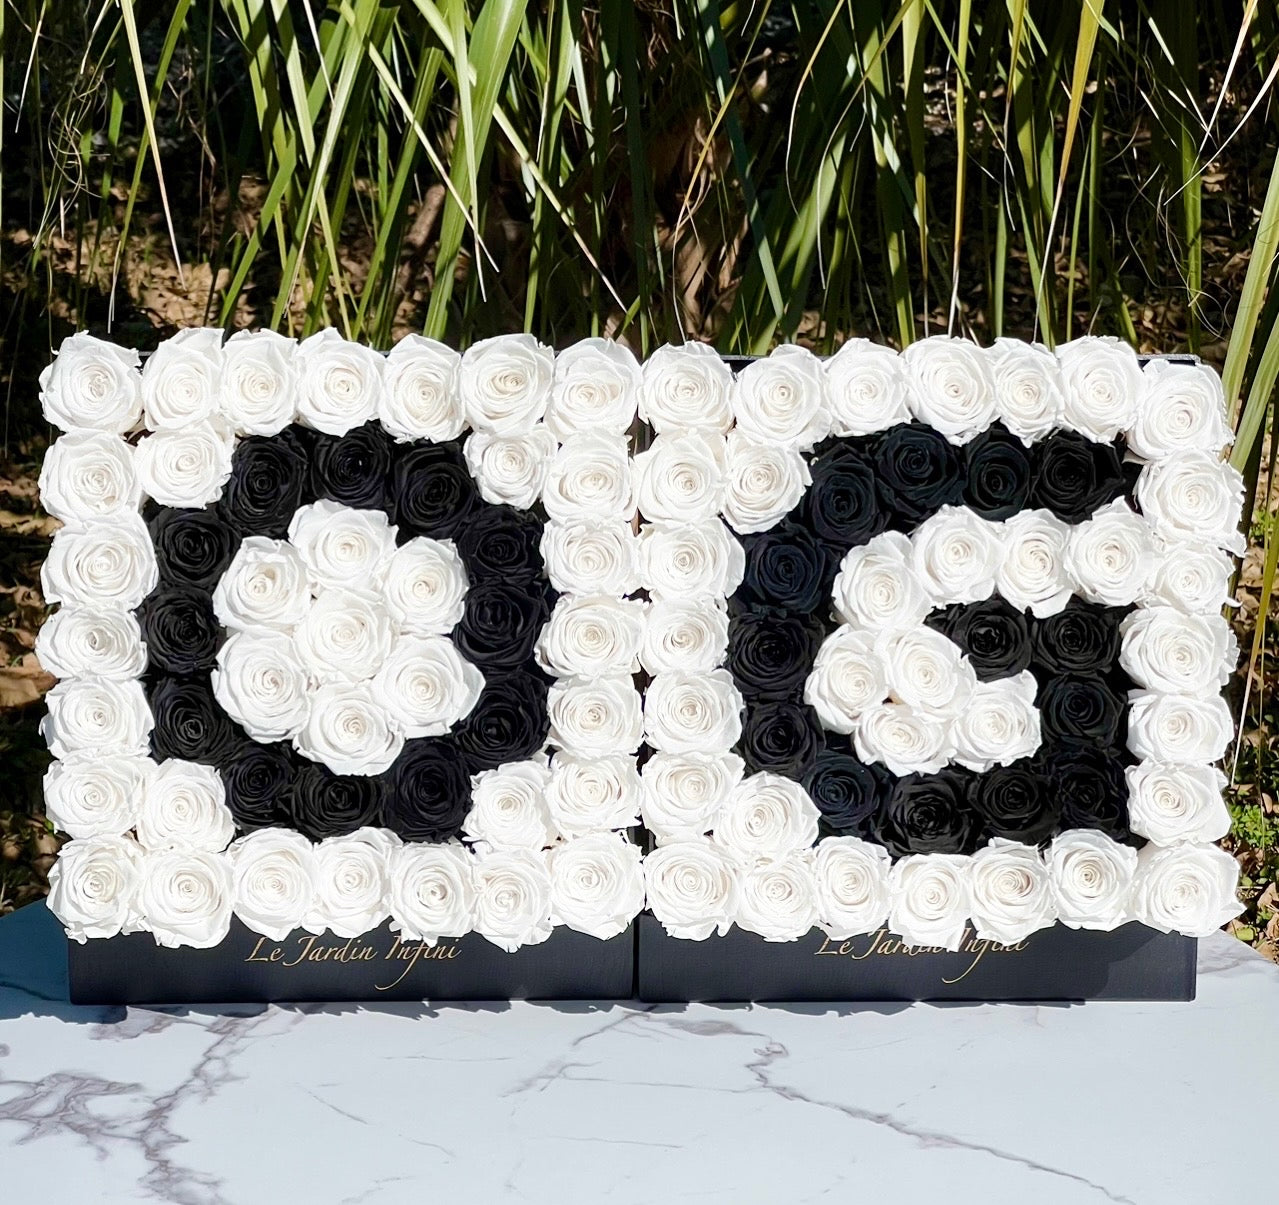 100 Roses White & Black OG Design Preserved Roses - 2 Large Square Luxury Black Leather Boxes